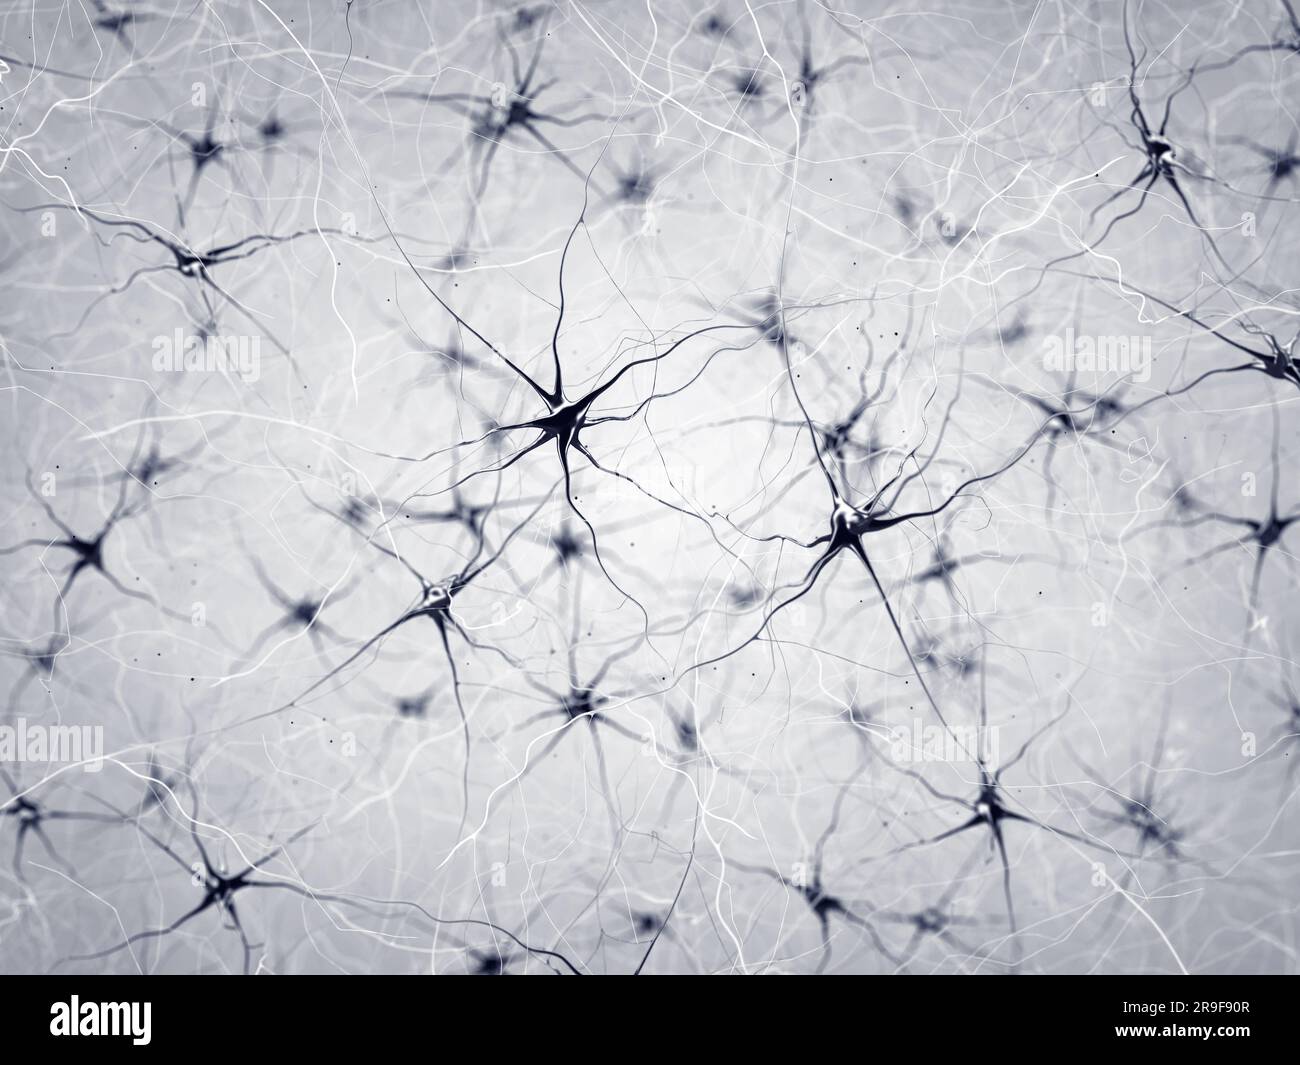 Neurone oder Nervenzellen. Die Neuronen übertragen Informationen zwischen verschiedenen Teilen des Gehirns Stockfoto